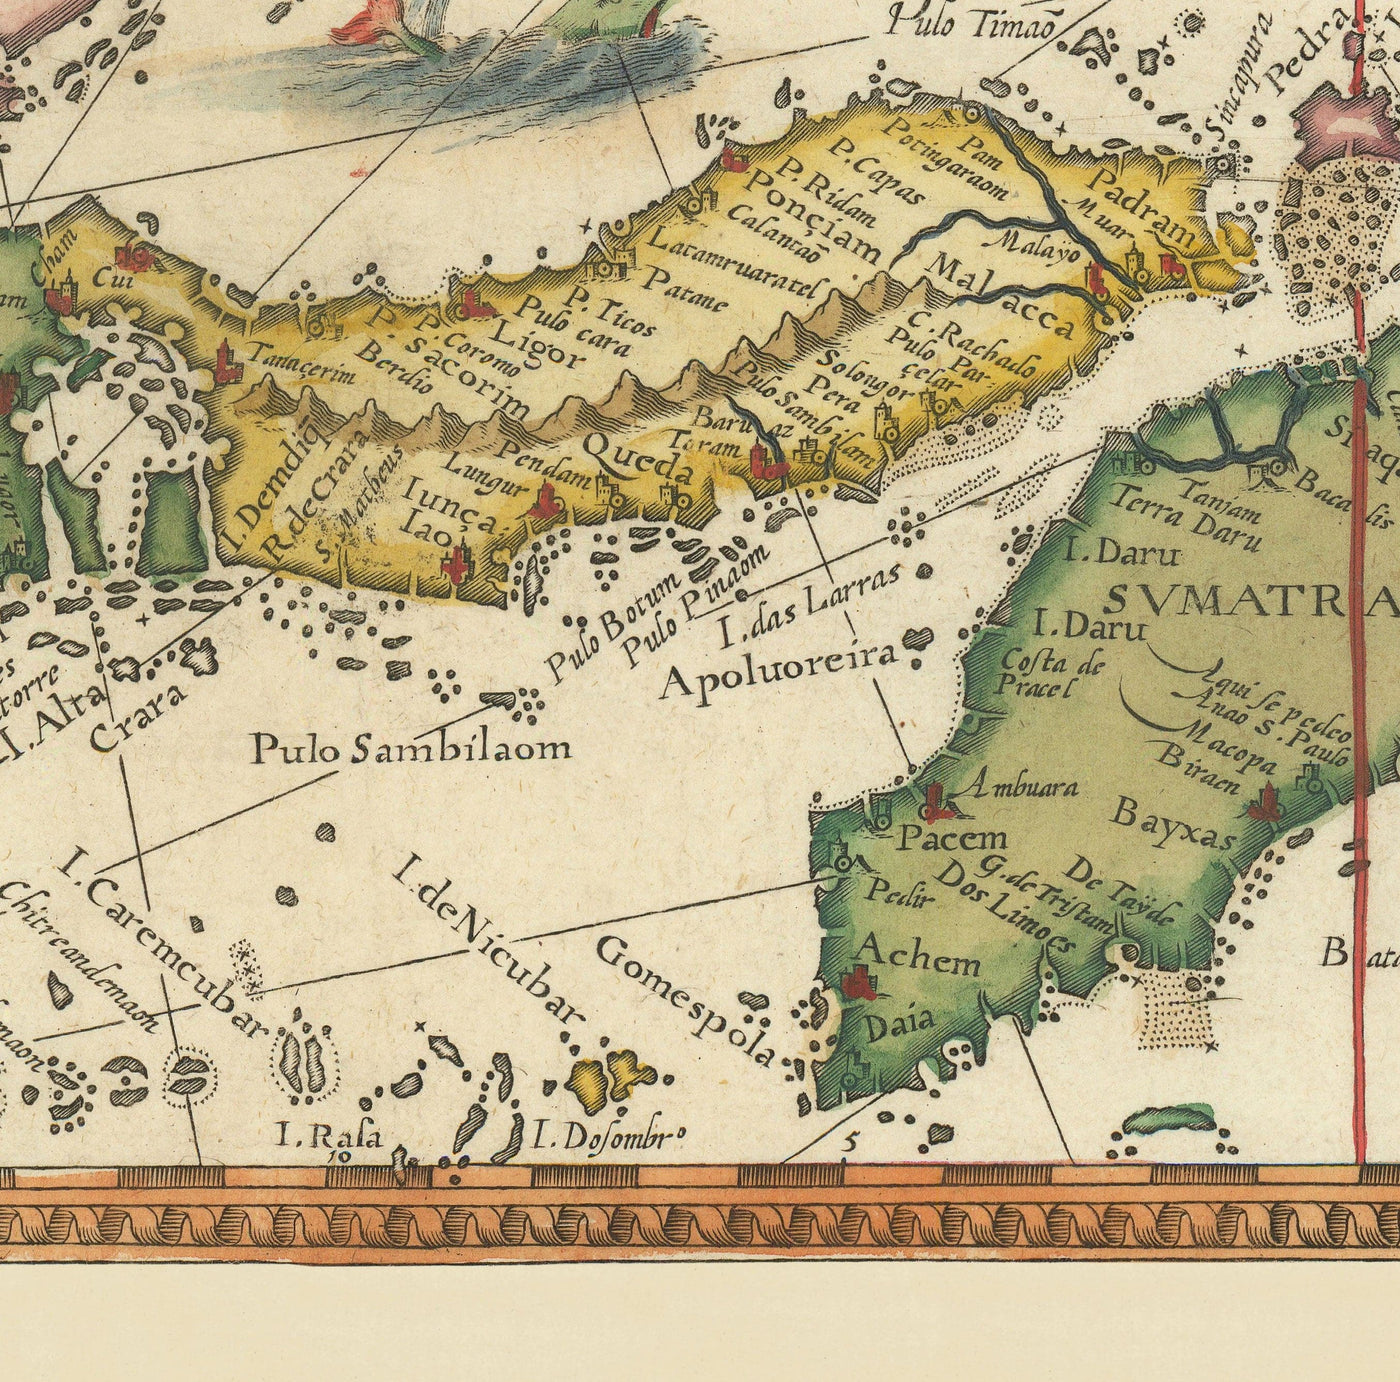 Alte Karte von Südostasien, 1596 - China, Korea, Japan, Philippinen, Singapur, Malaysia, Indonesien, Ostindien